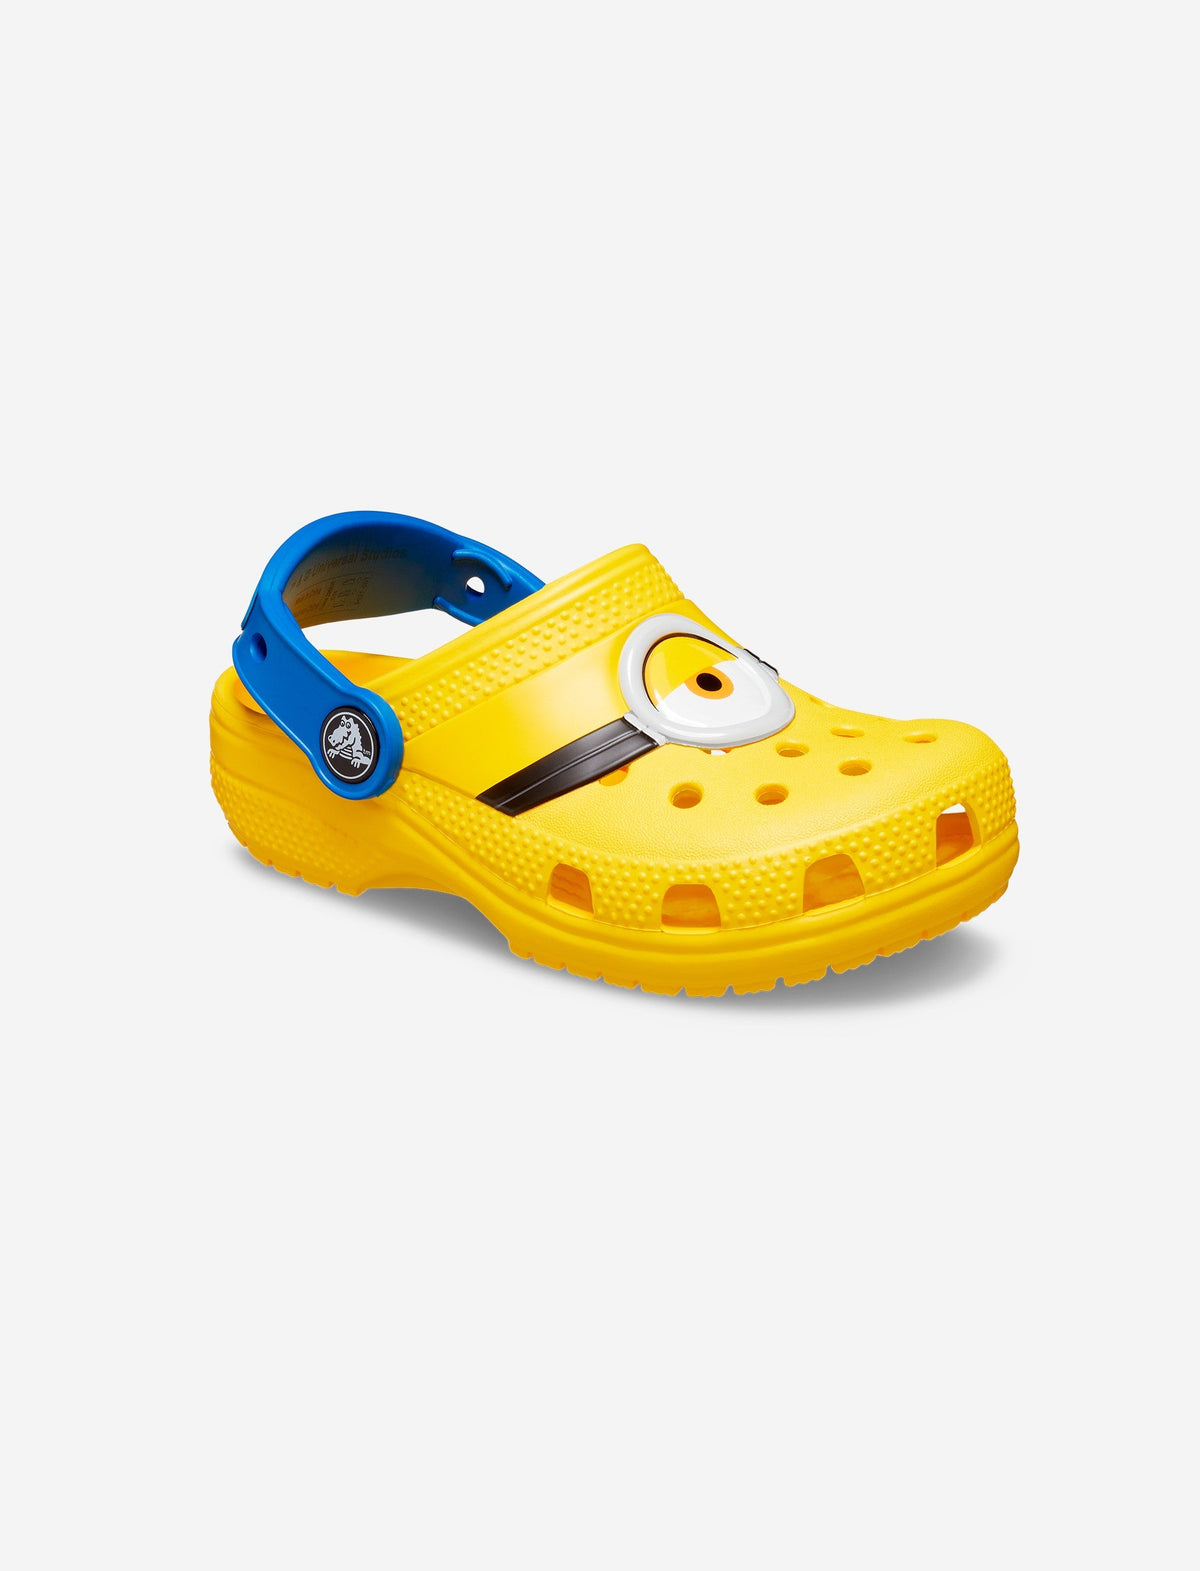 Crocs Kids Fun Lab I Am Minions Clog - כפכפי קרוקס מיניונים לילדים בצבע צהוב/כחול מידות קטנות-Crocs-27-28-נאקו